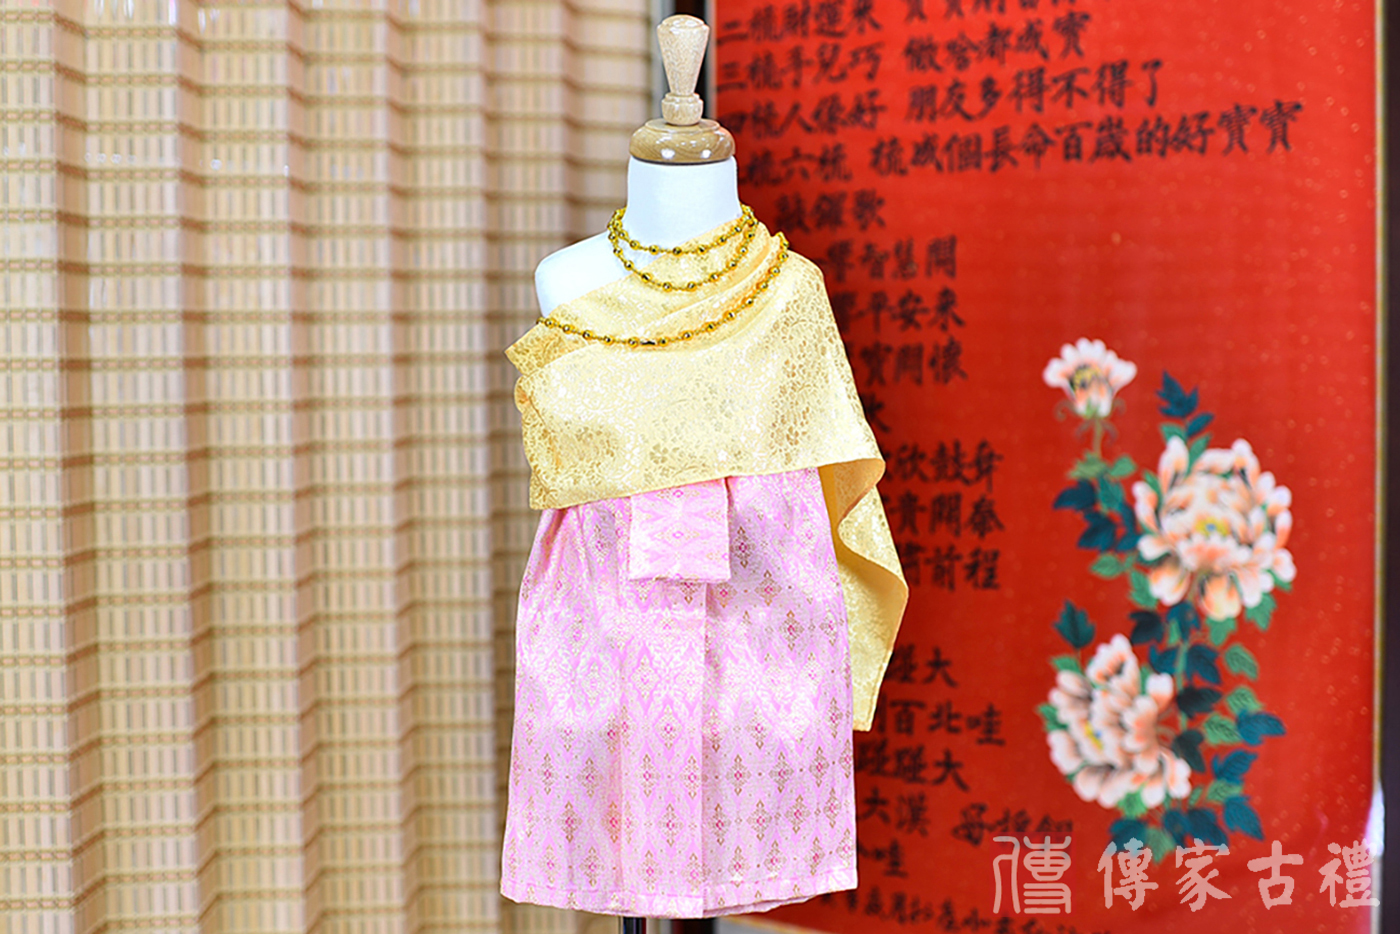 2024-02-22小孩皇室泰服古裝禮服照。金線綴飾的華美上衣和粉紅色泰式圖案裙的泰式古裝禮服。照片集